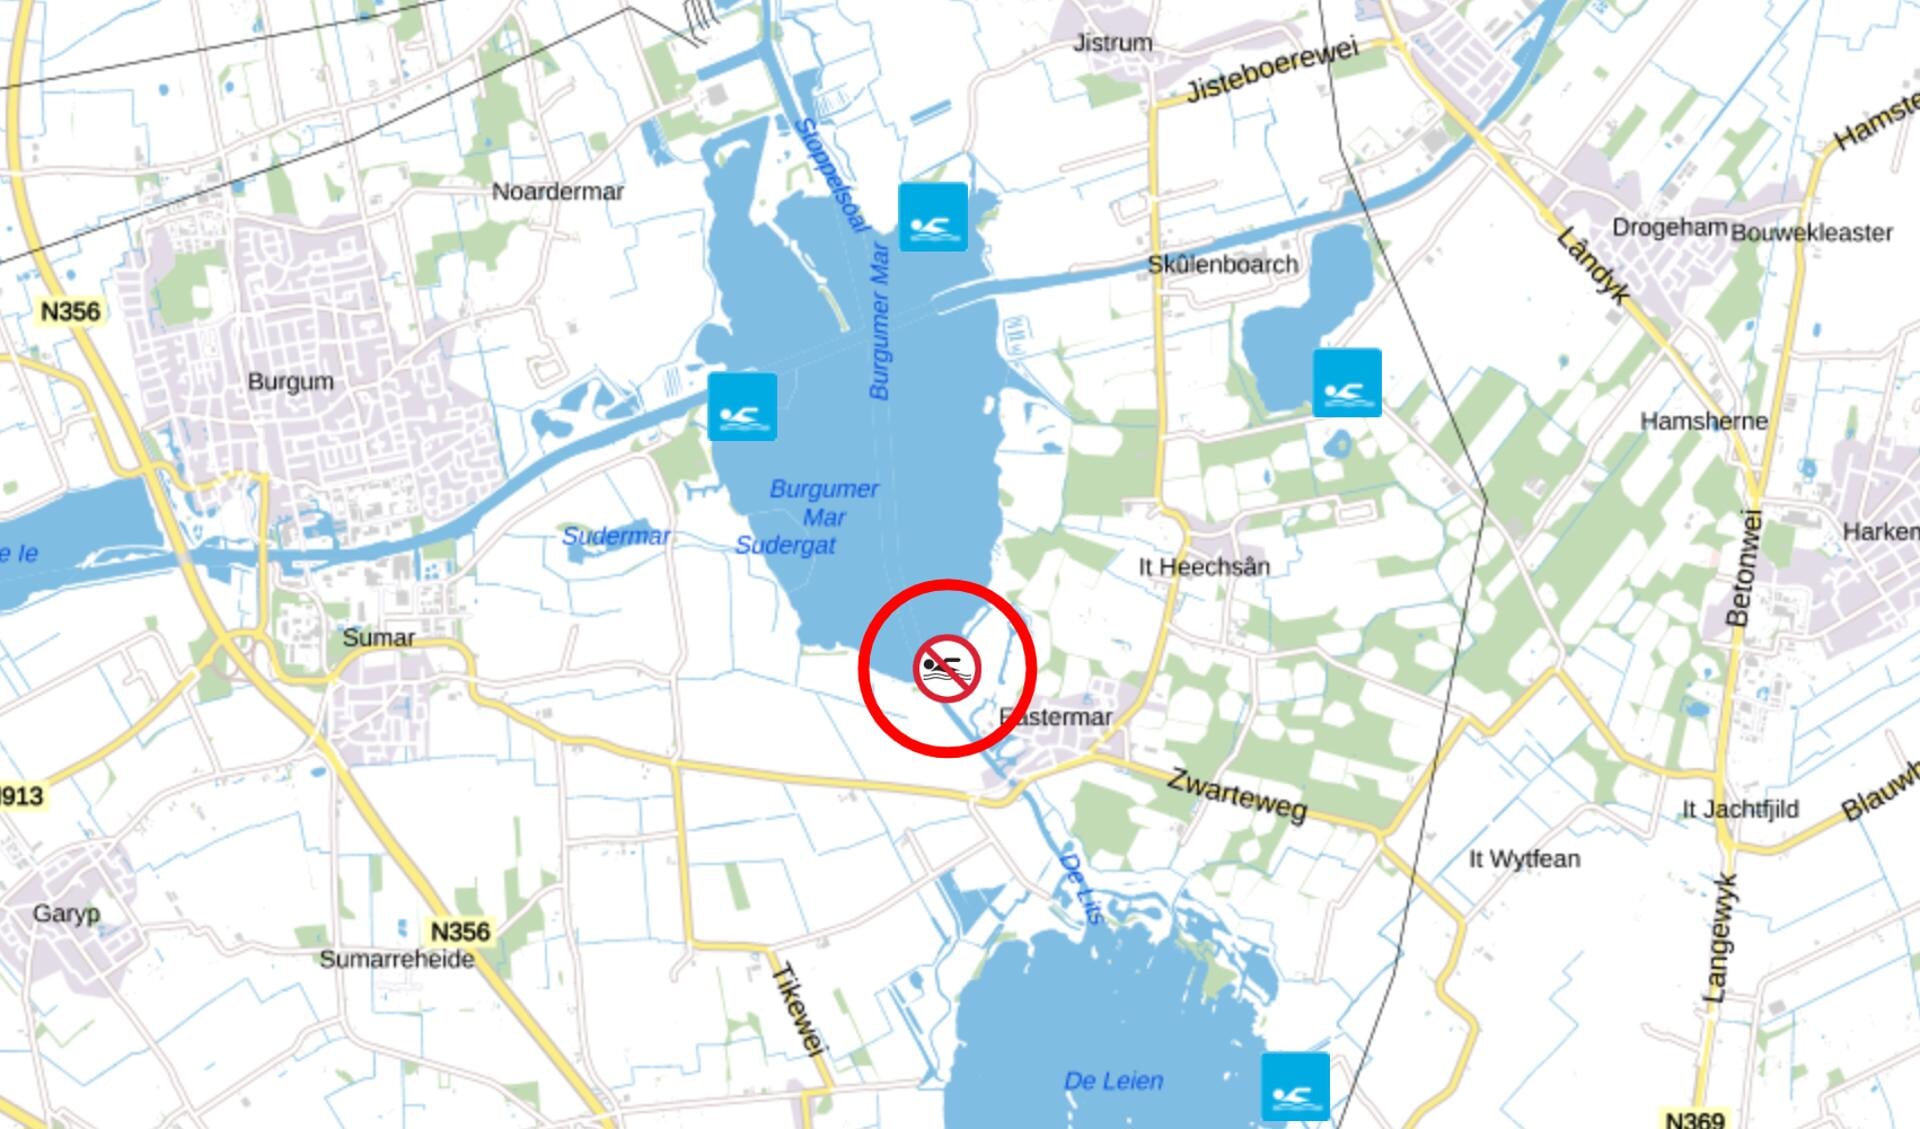 Het rode symbool betreft 'Swimplak Eastermar' in de zuidhoek van de Burgumer Mar. Het betekent: Negatief zwemadvies, (vanaf 01-05-2021 tot 01-10-2021)Zwemmen ontraden vanwege onvoldoende waterkwaliteit. Grote kans op maag-/darmklachten. 